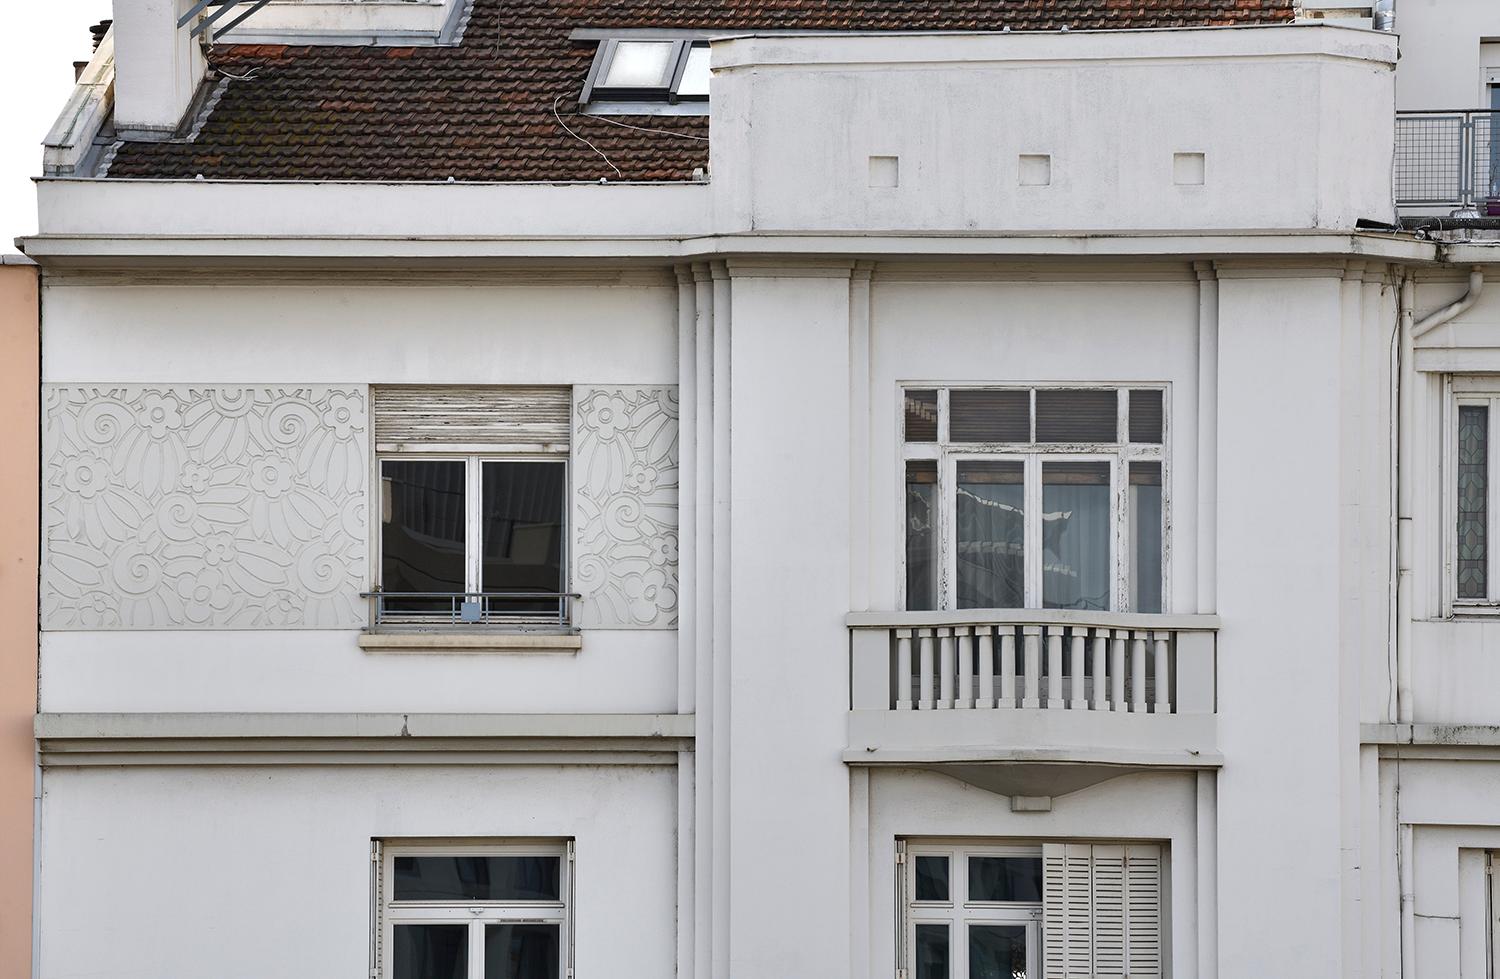 Dernier étage : frise Art déco et balcon aux balustres stylisés, 152 cours Gambetta